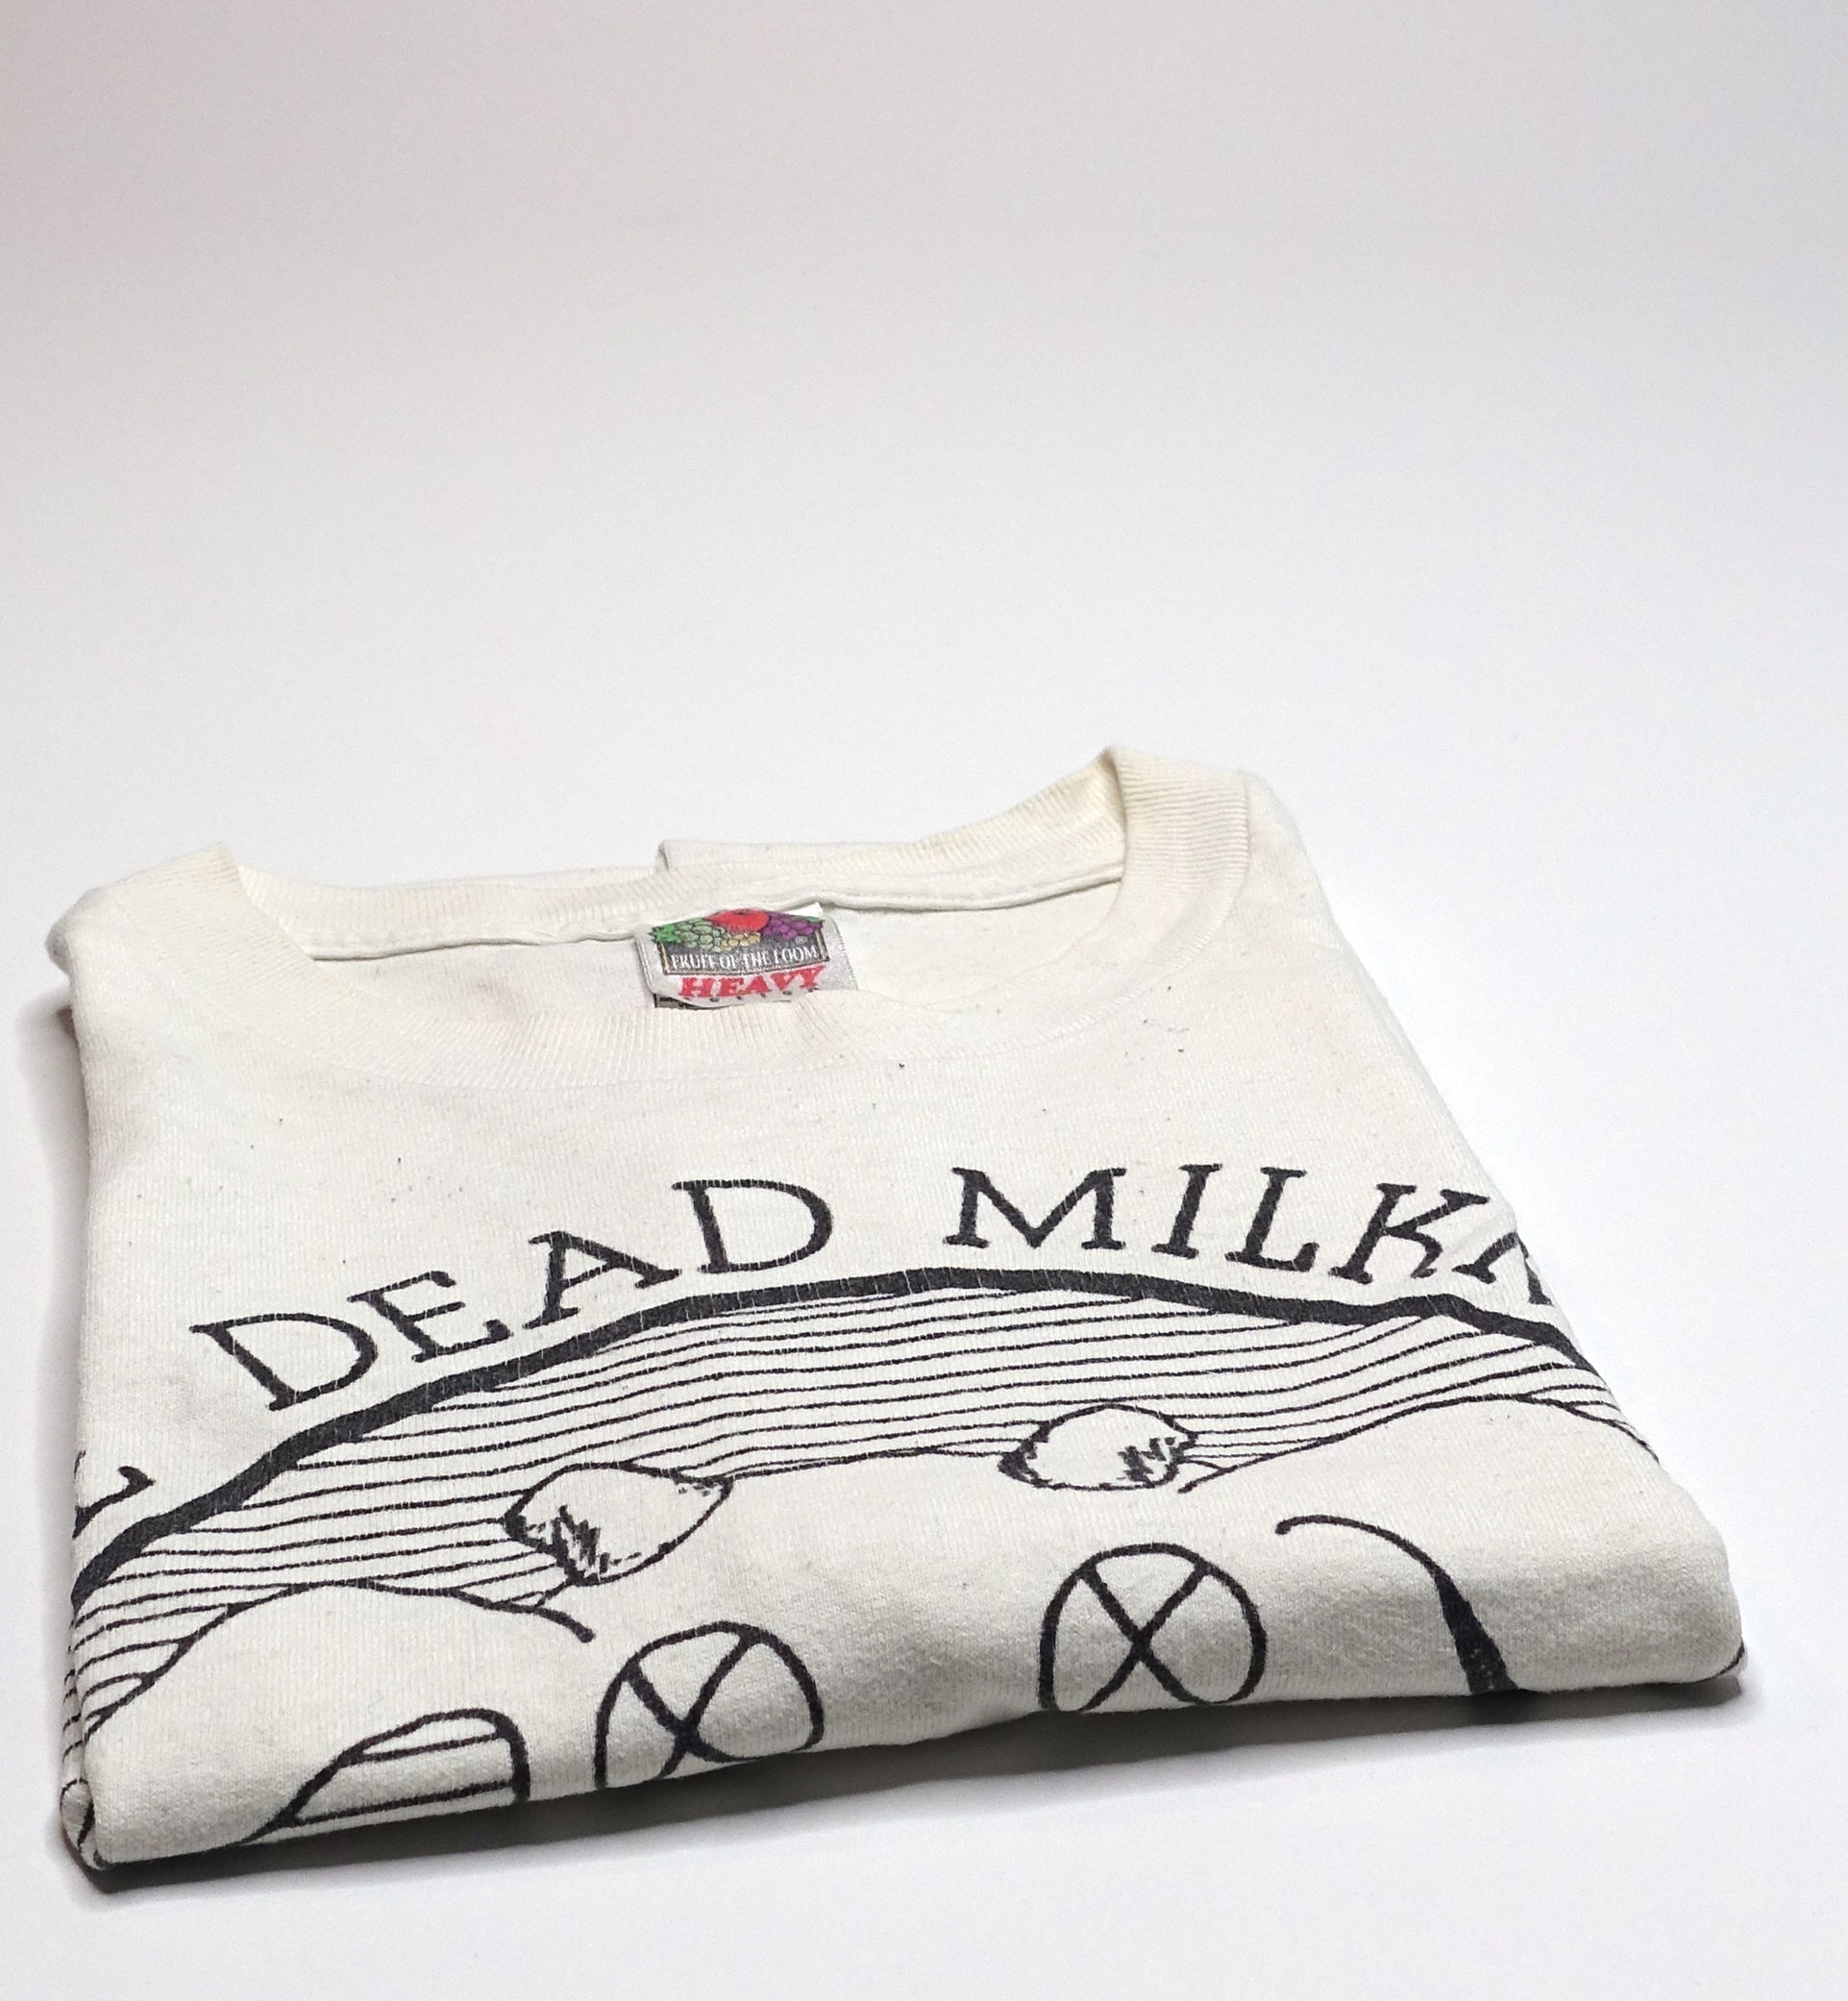 Dead Milkmen - OG Cow Logo Shirt Size Small